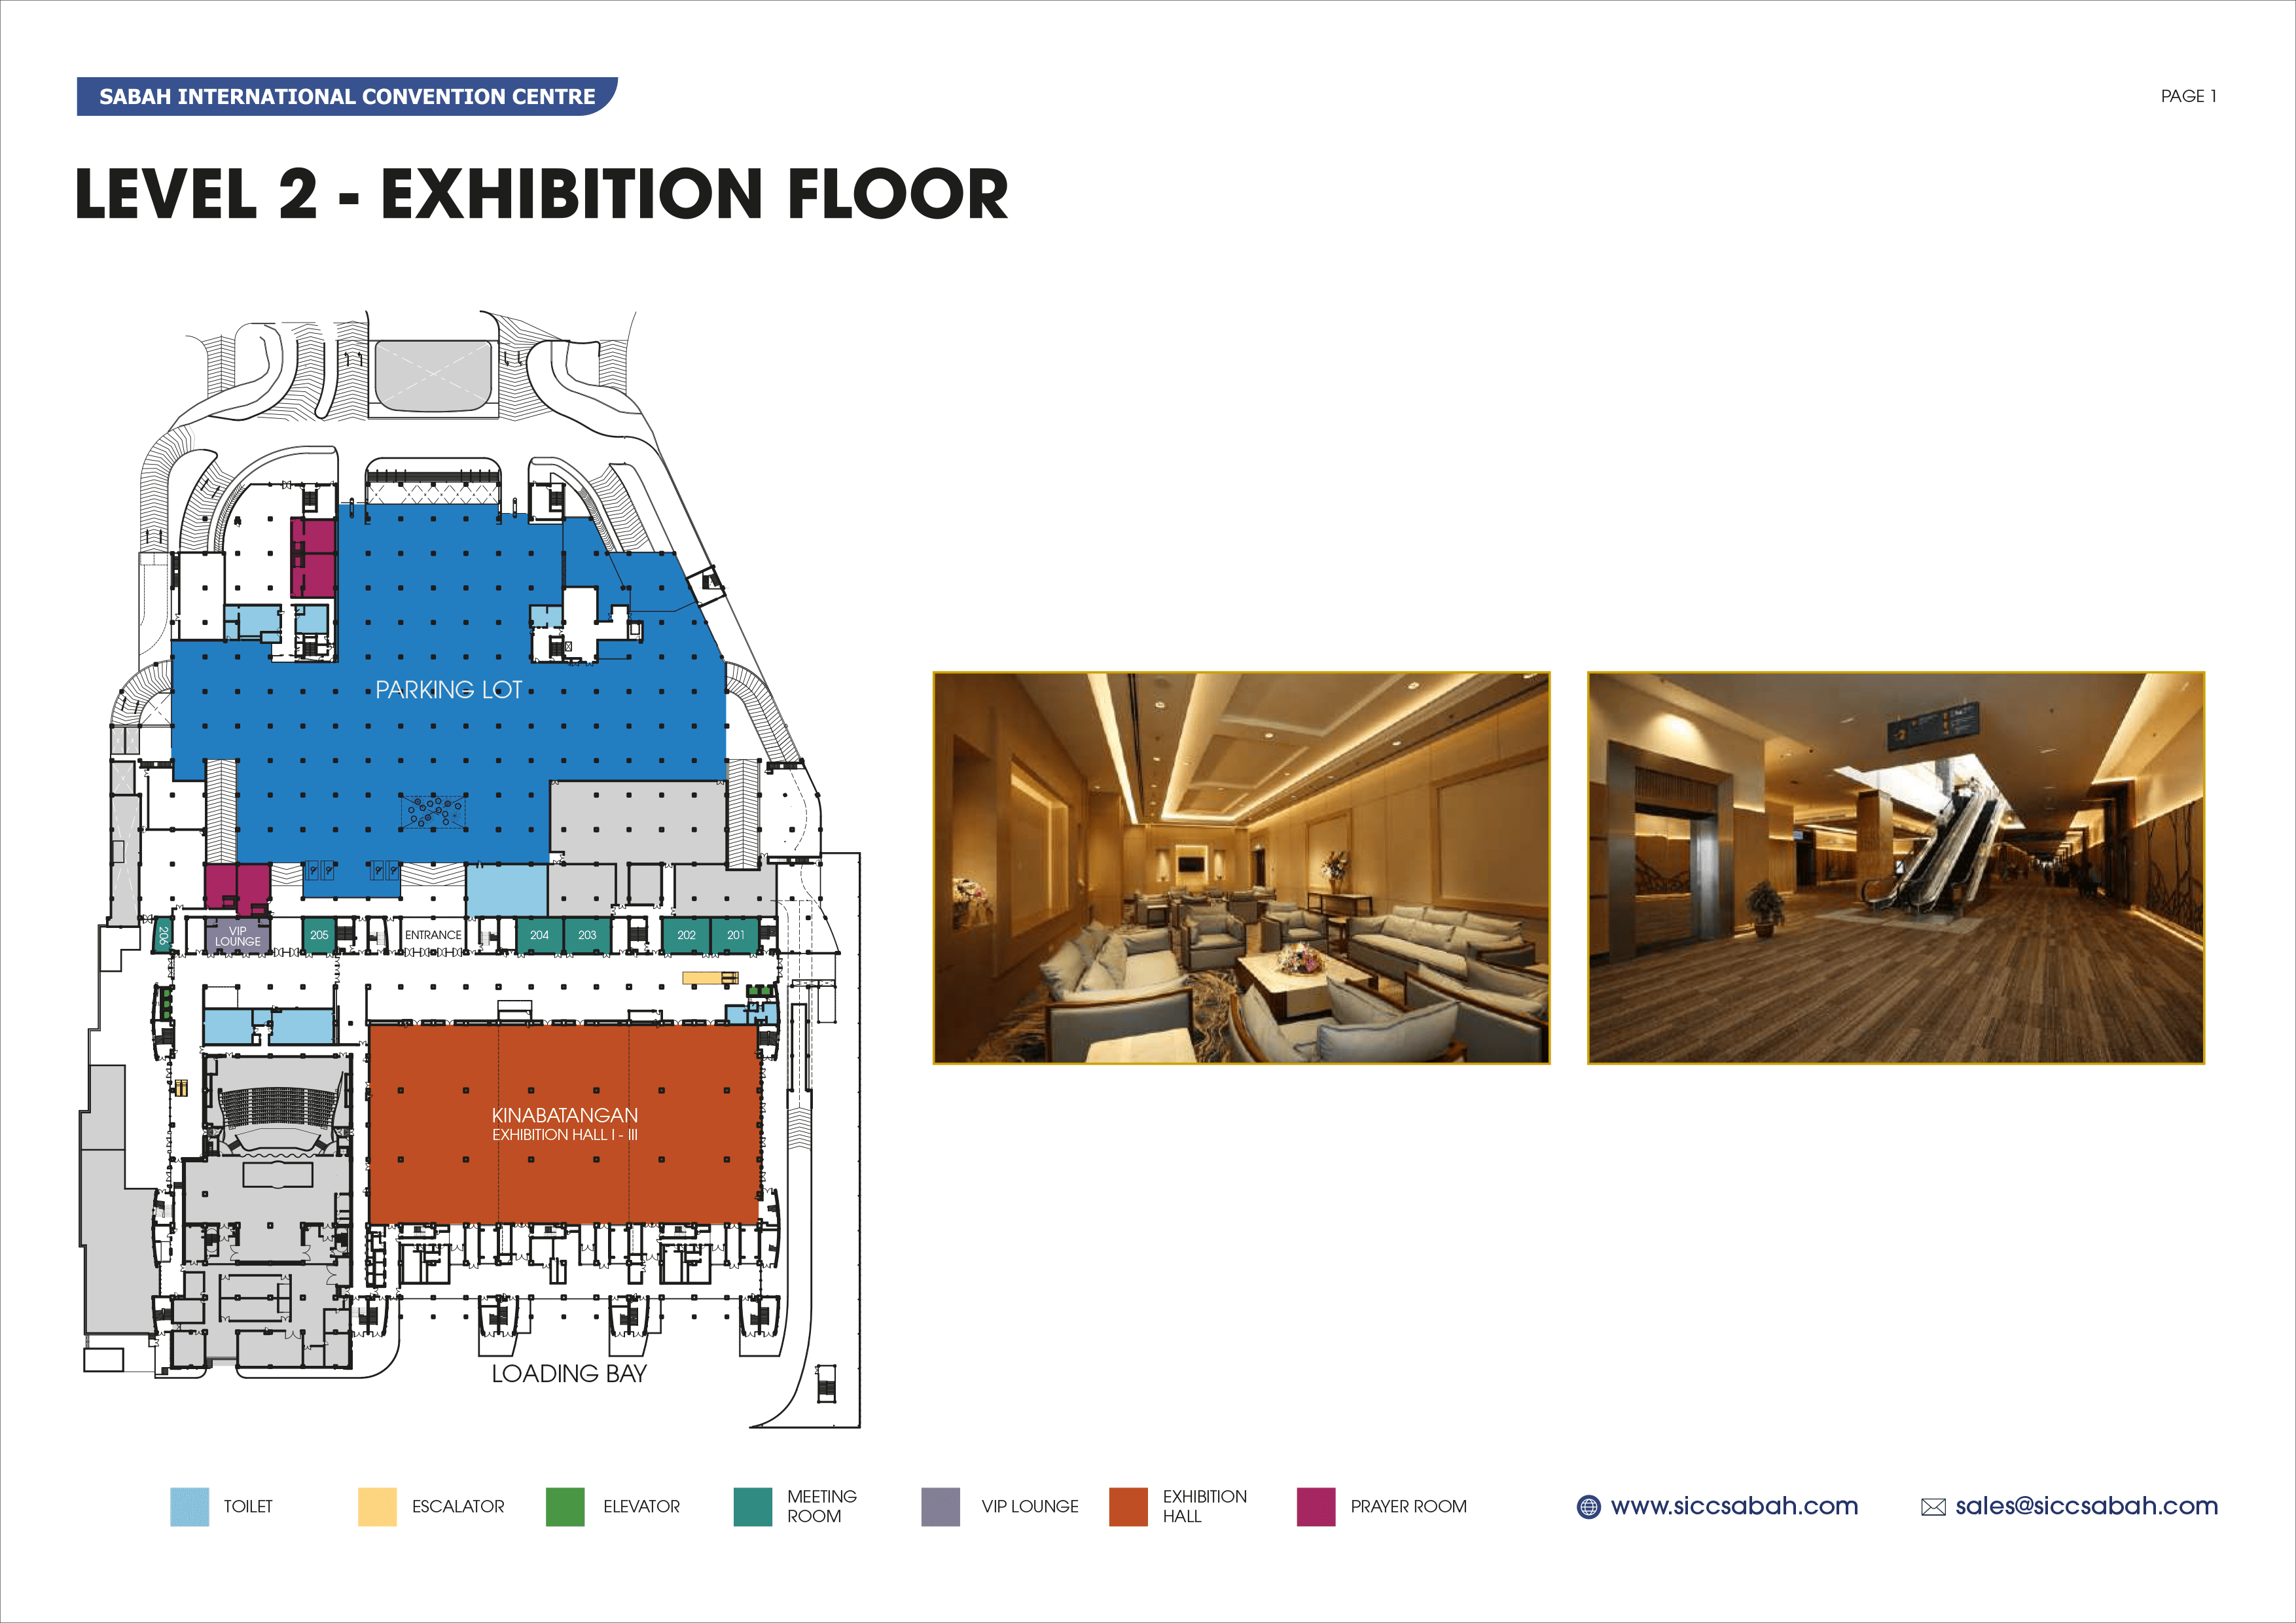 Level 2 - Exhibition Floor